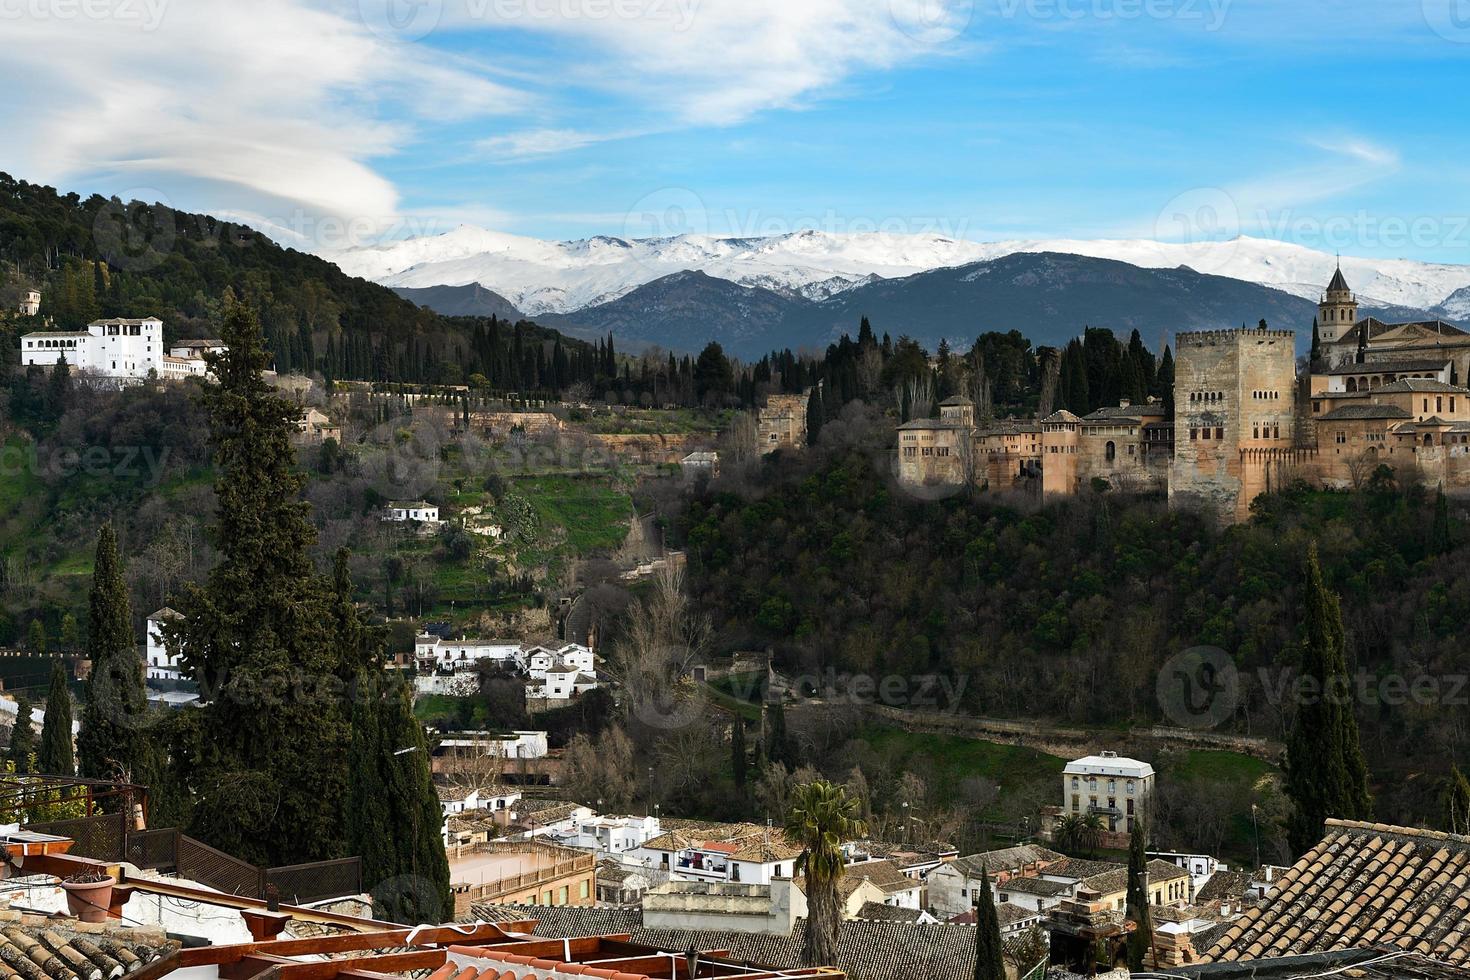 alhambra und schneien sierra nevada berge unter einer linsenförmigen wolke foto